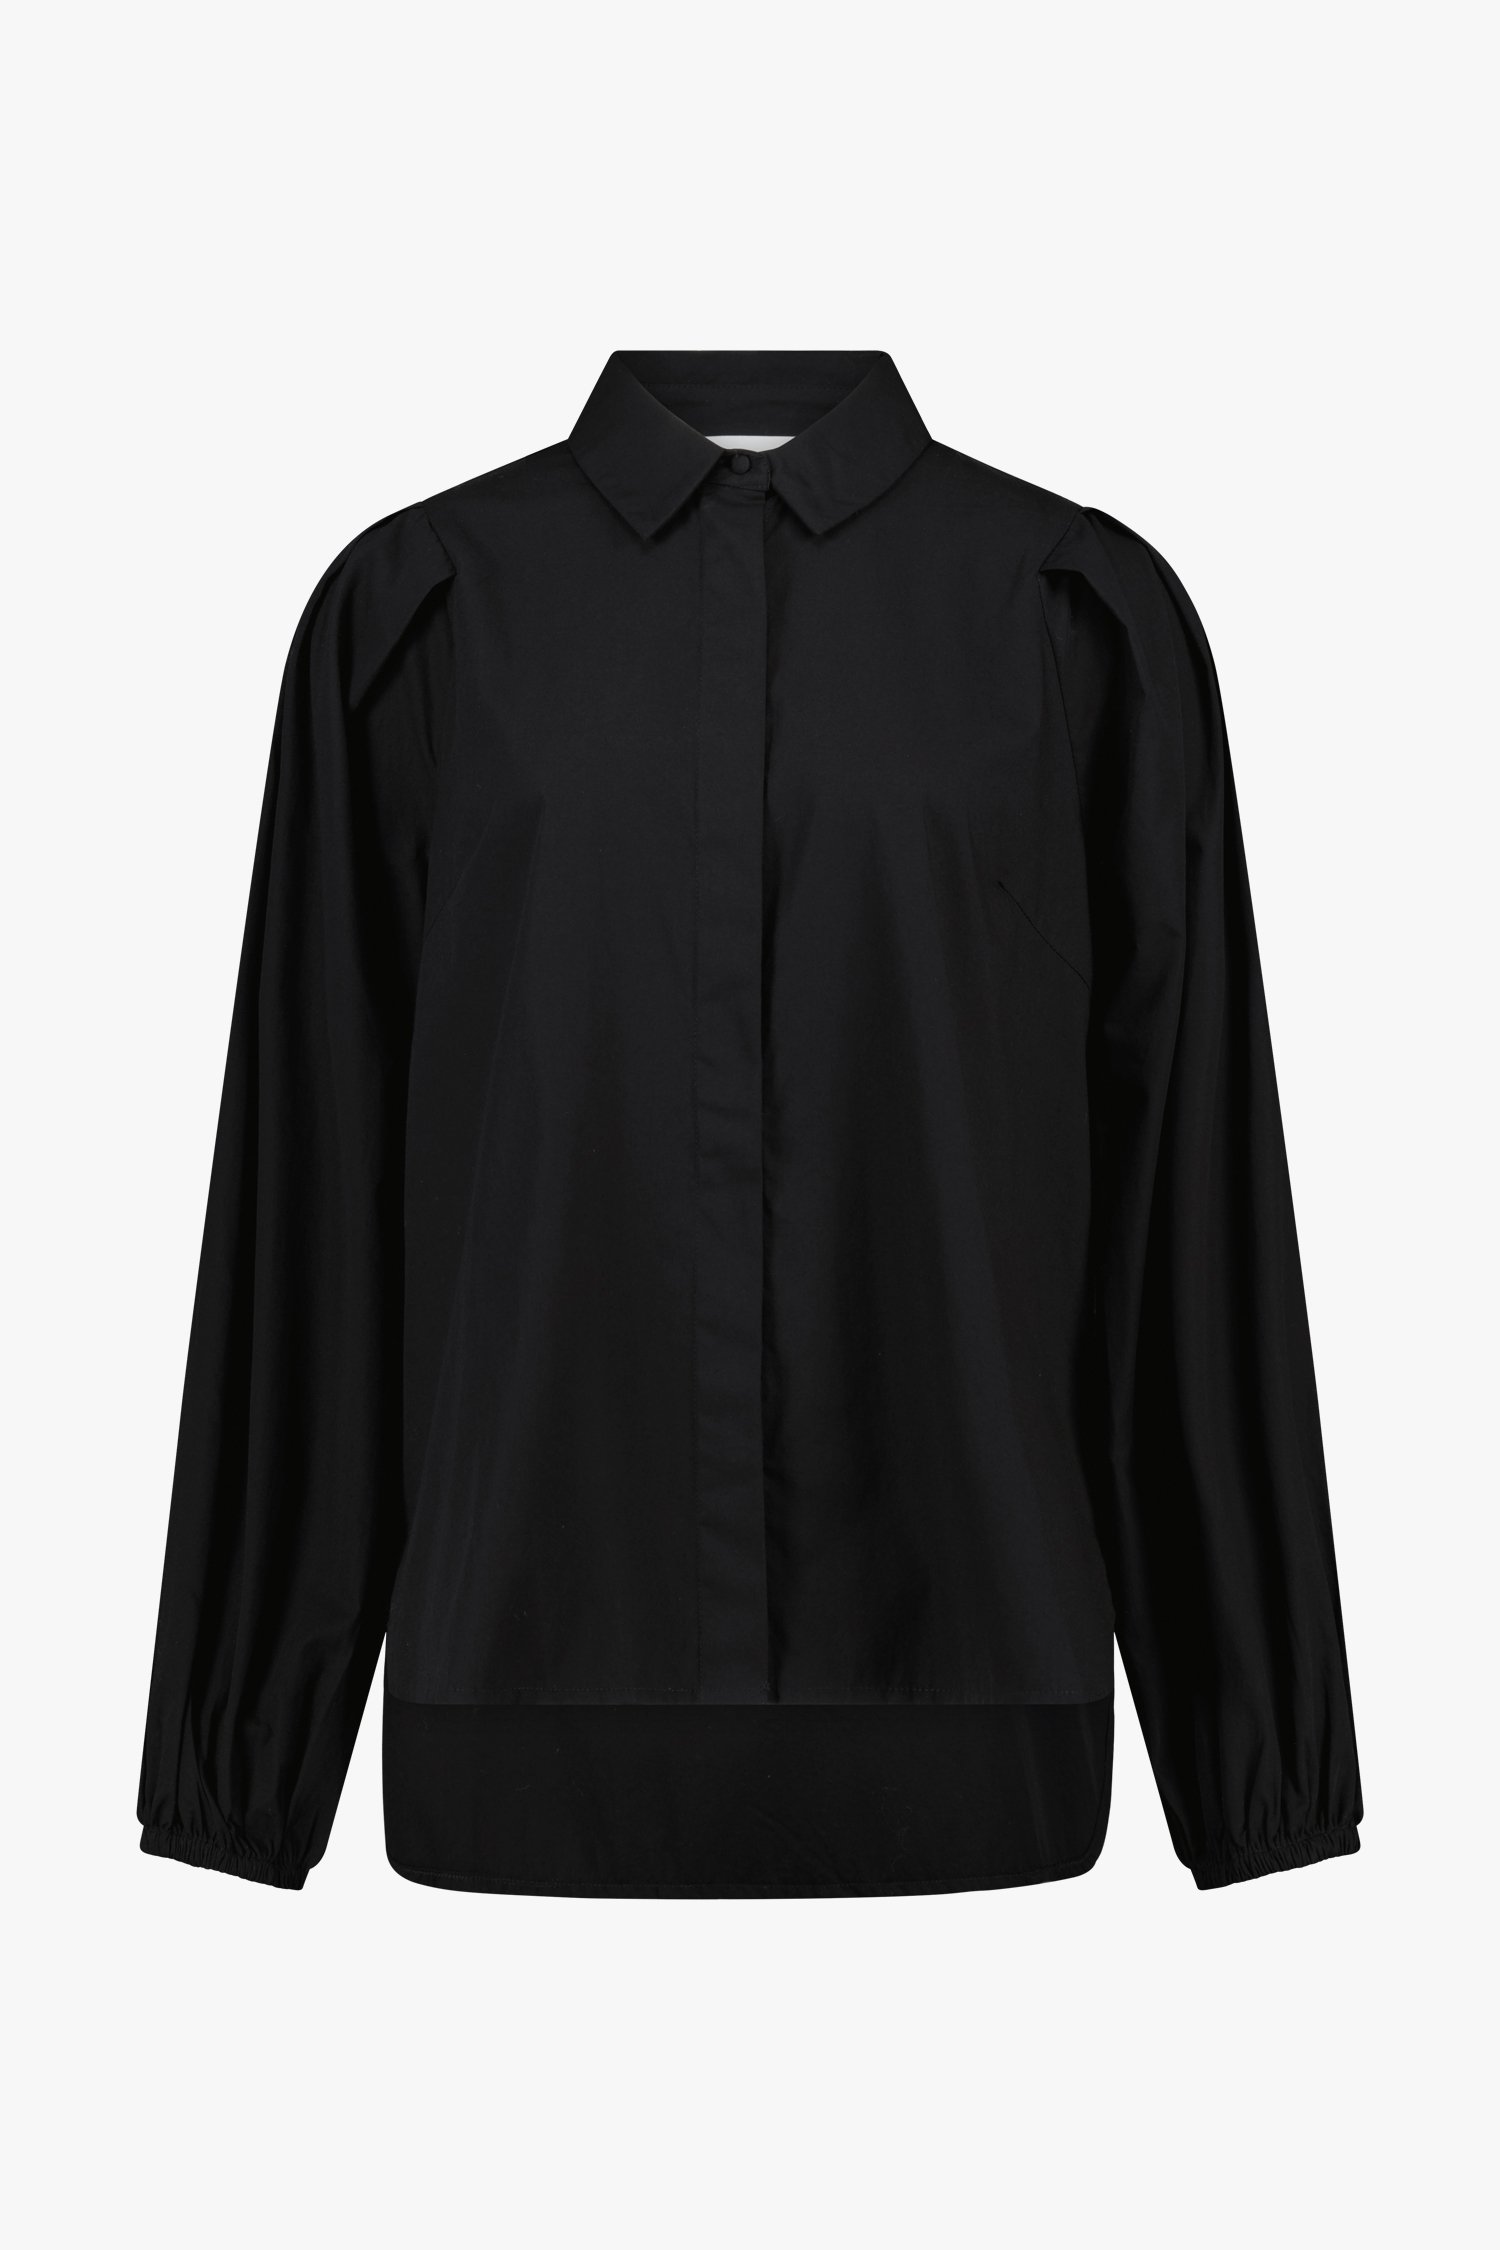 Zwarte blouse met chique afwerking  van Fransa voor Dames